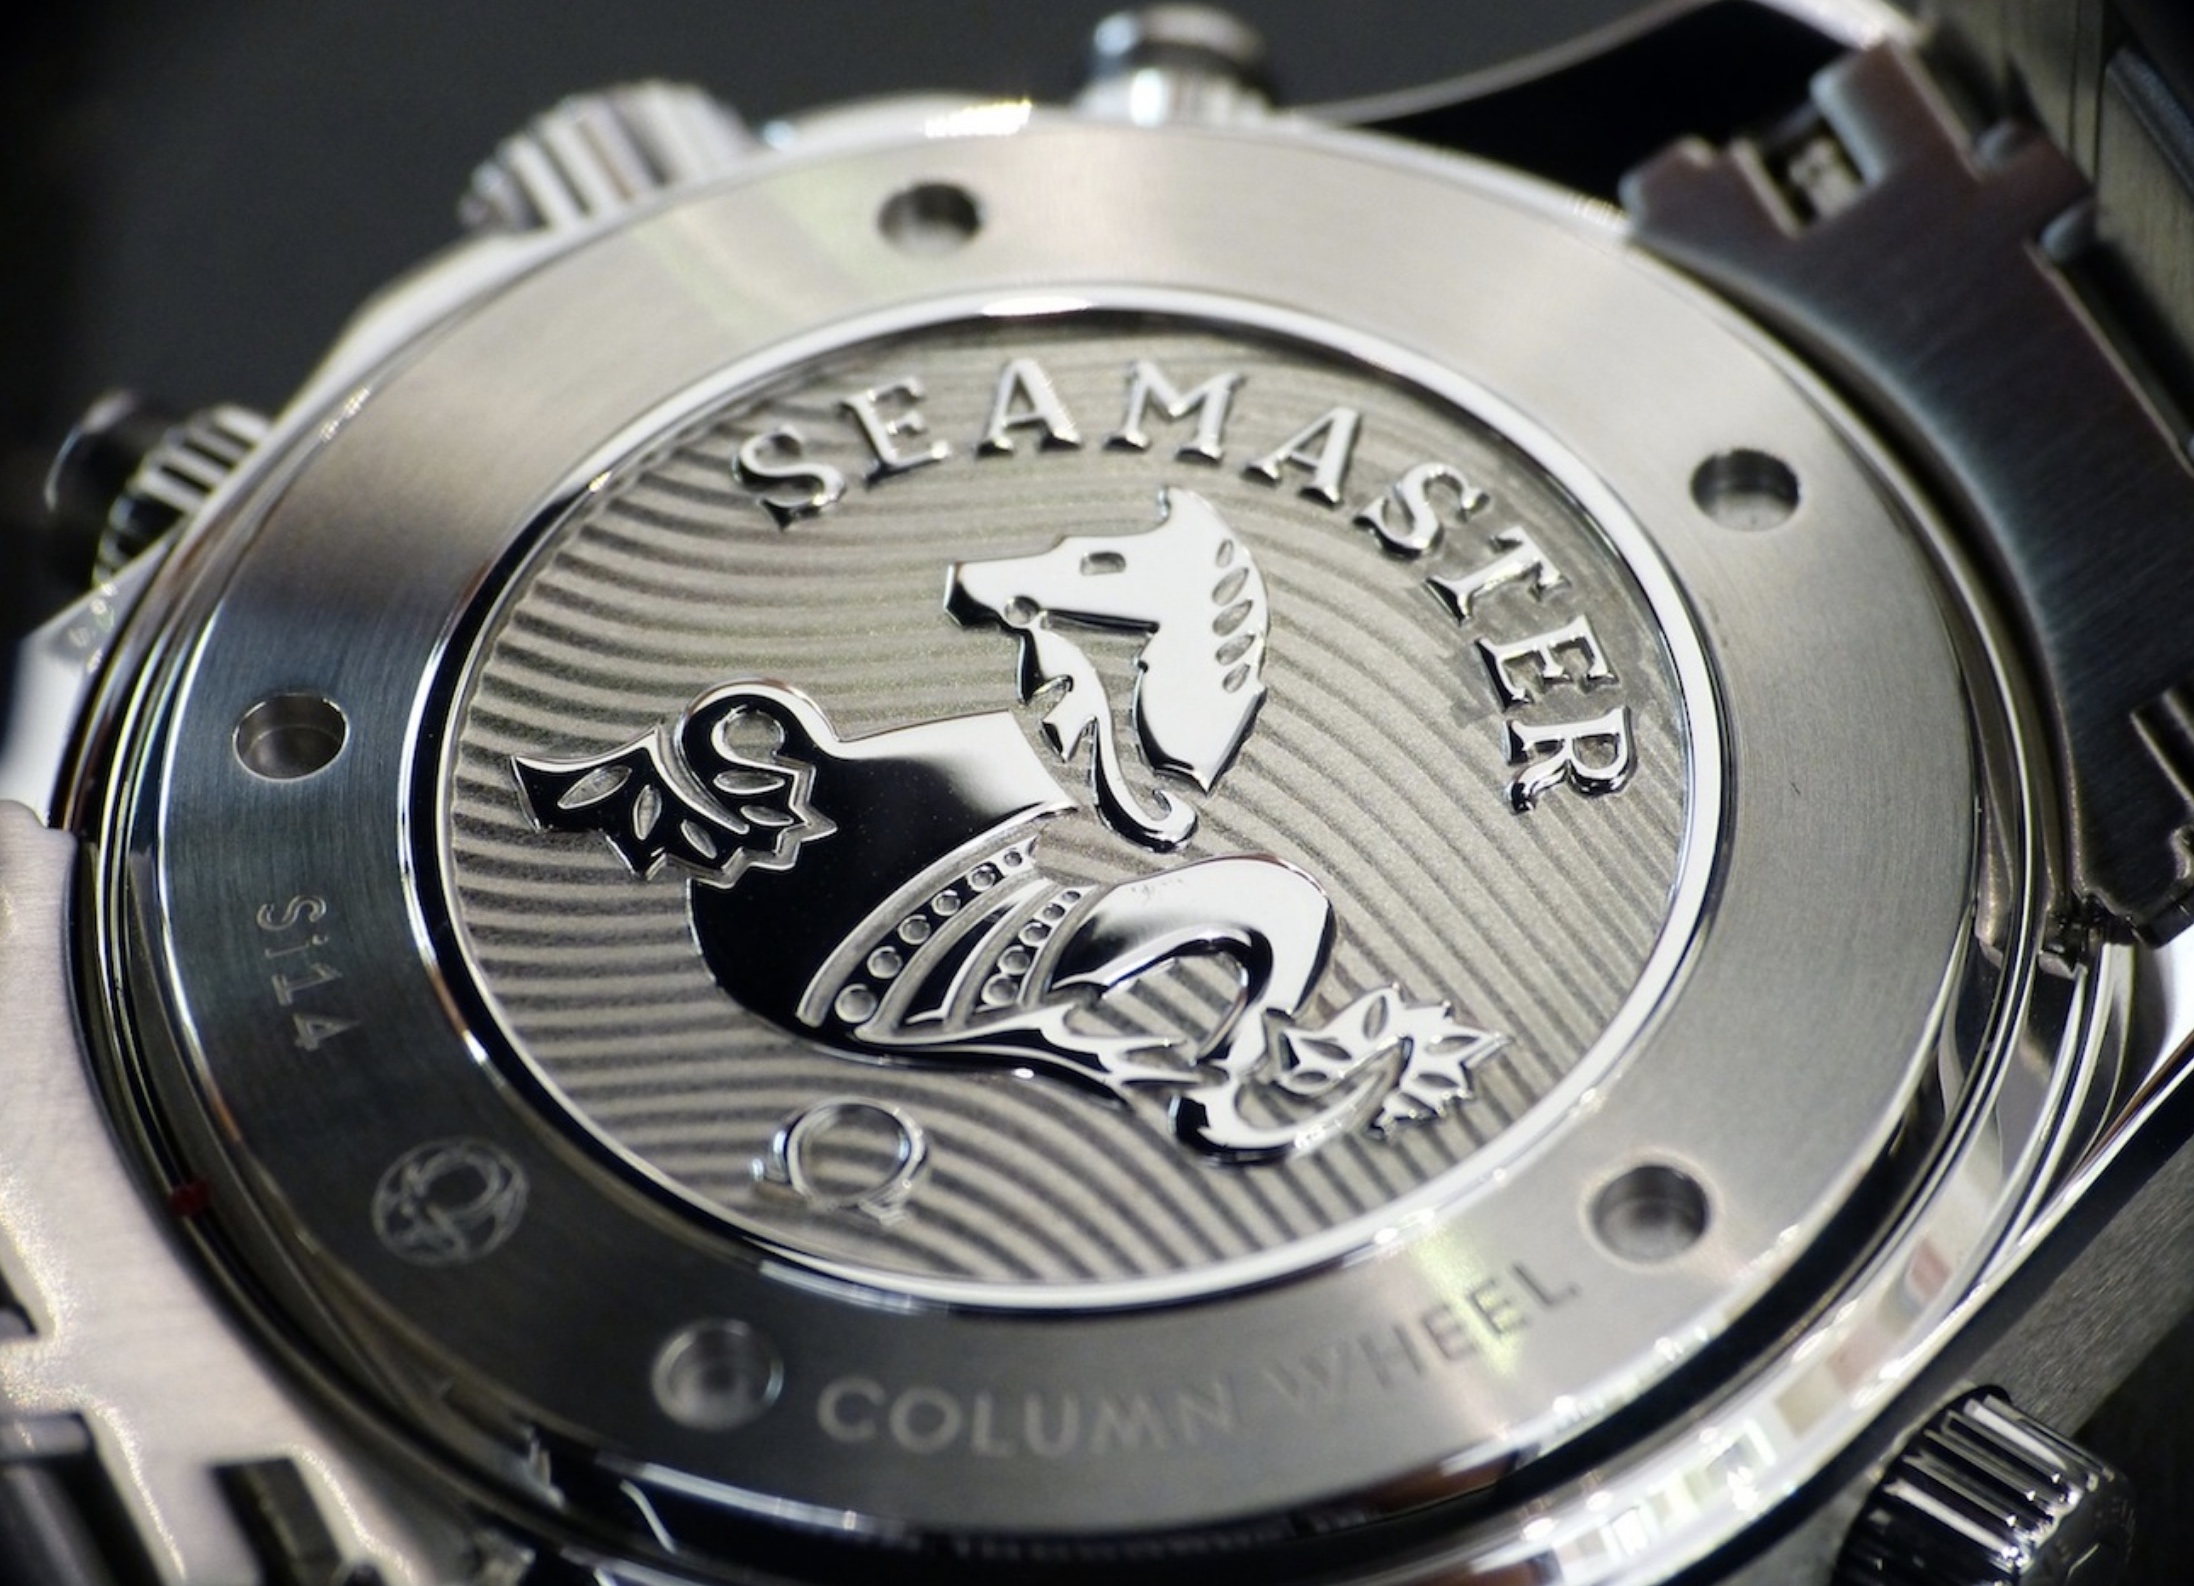 Seamaster Diver 300m Co-Axial Chronograph 44mm. Här hittar du ett stort antal exklusiva klockor och lyxklockor.